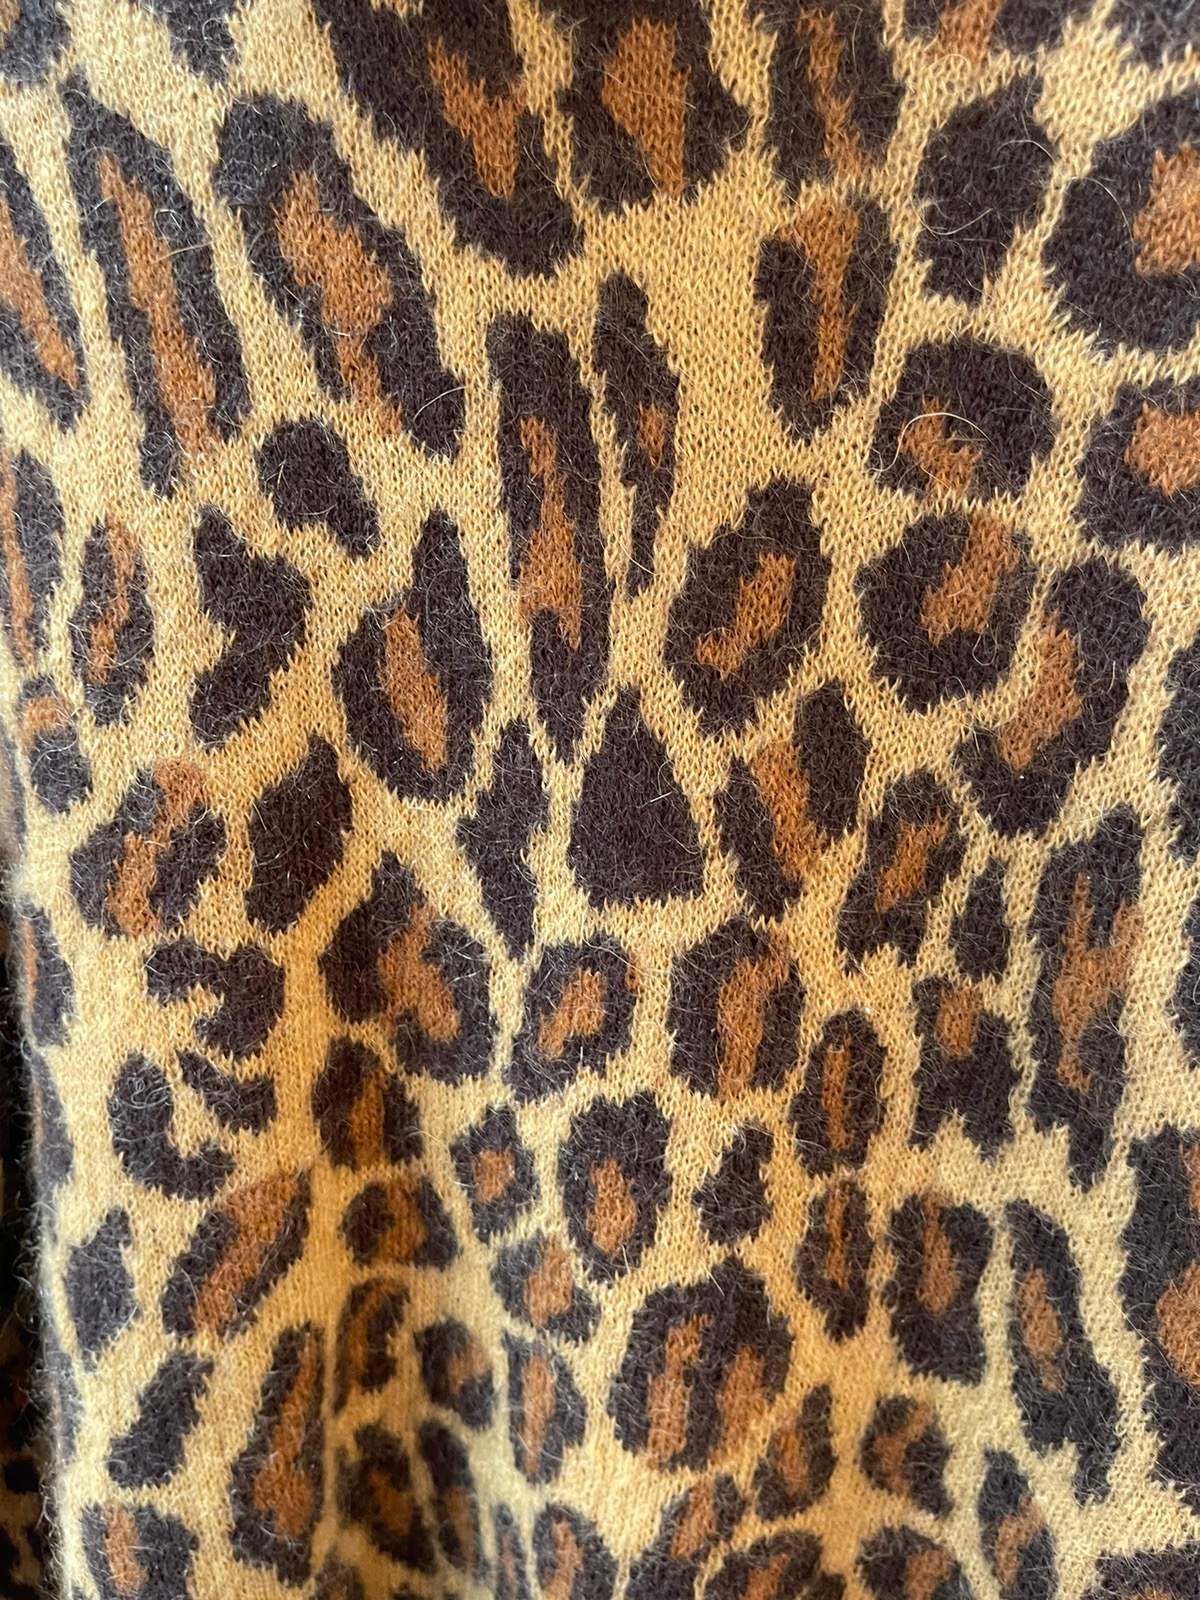 SLP FW15 Leopard Mohair Sweater New